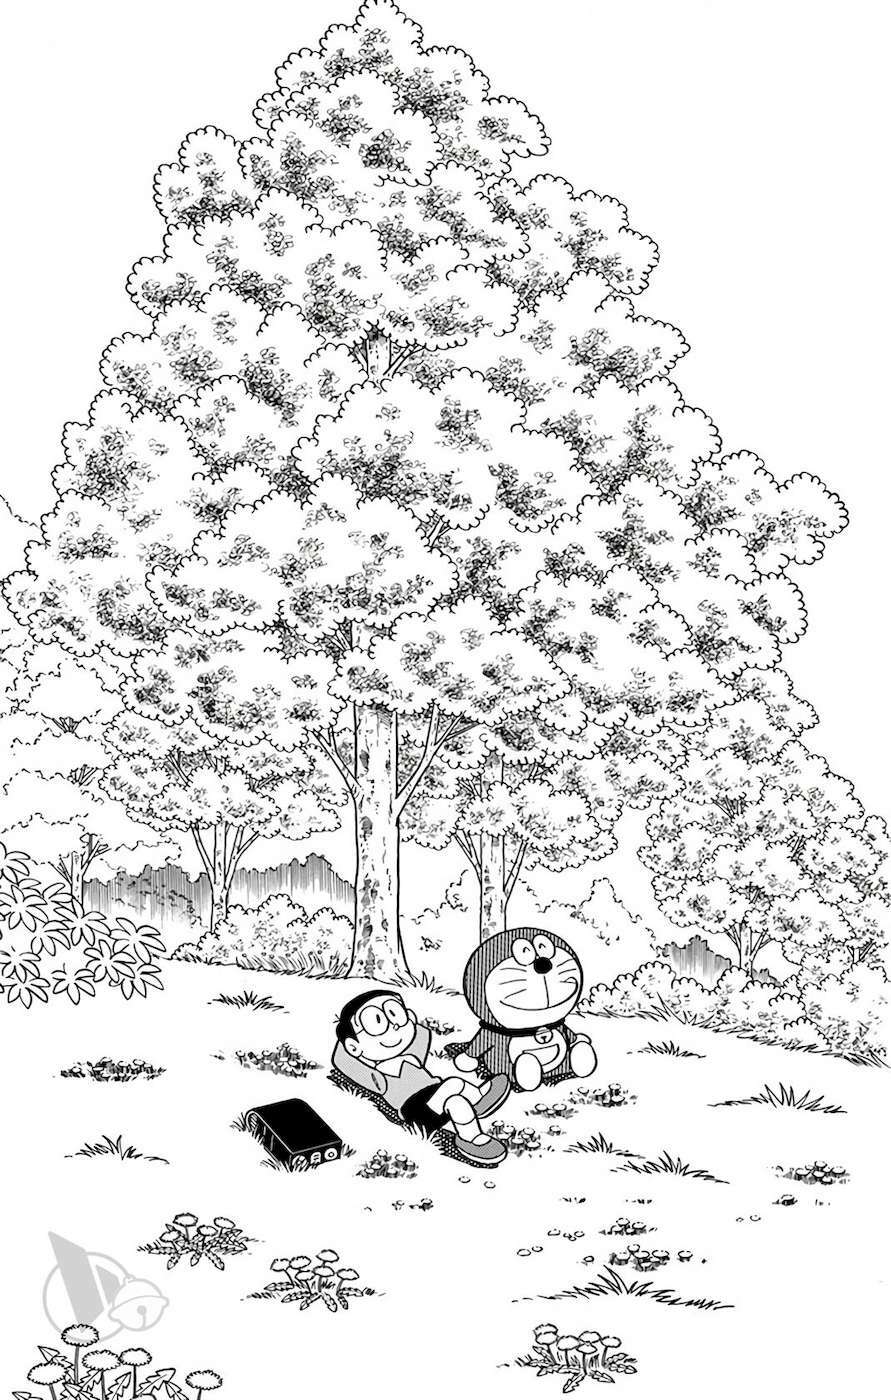 Truyện Tranh Doraemon: Đi Tìm Miền Đất Mới trang 185